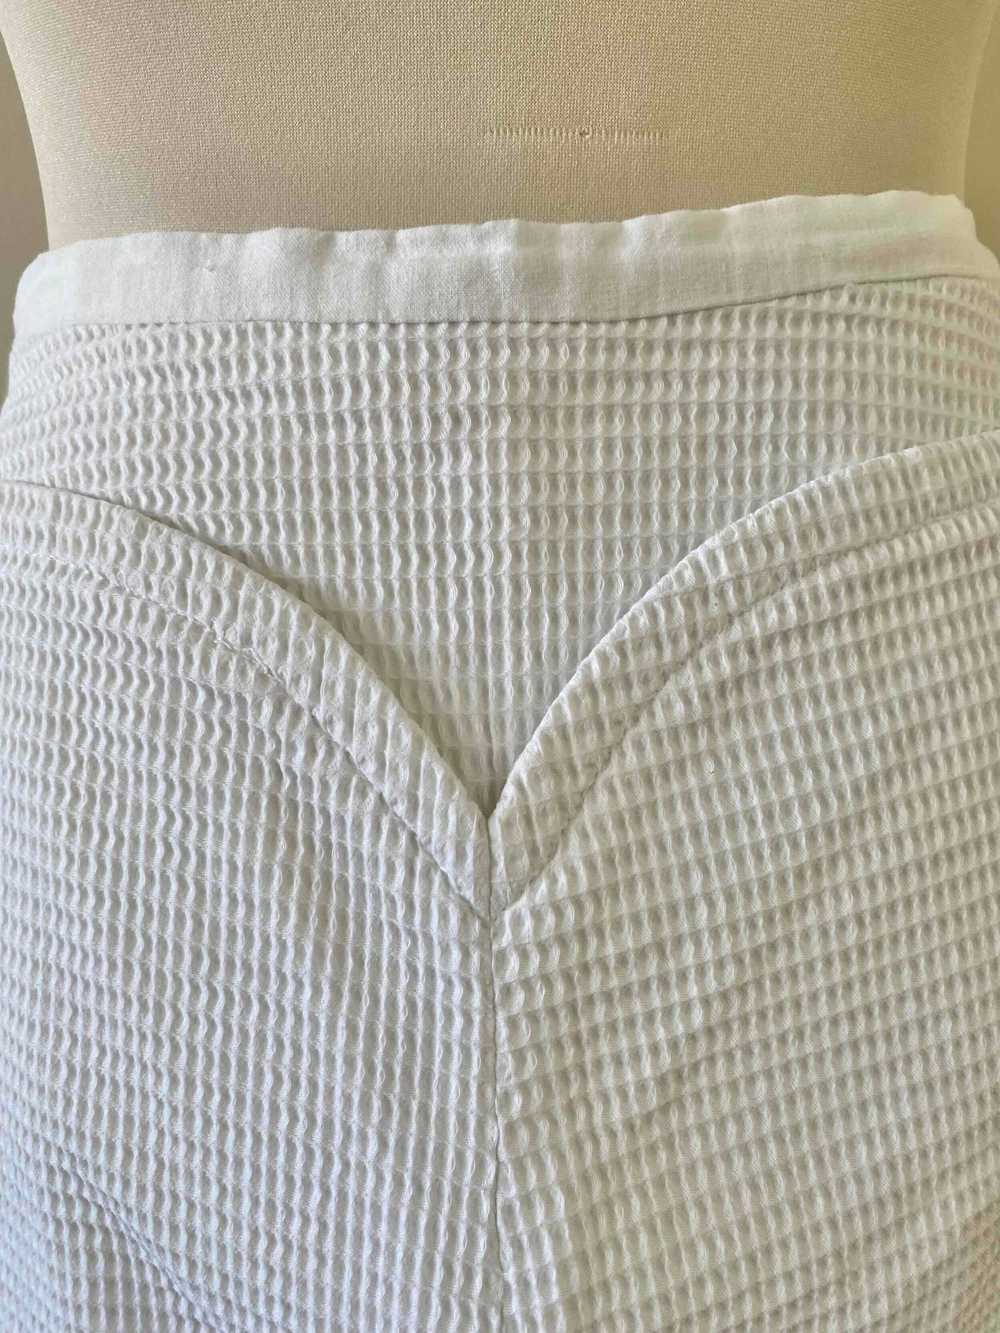 Courrèges pants - Courrèges pants, in white doubl… - image 6